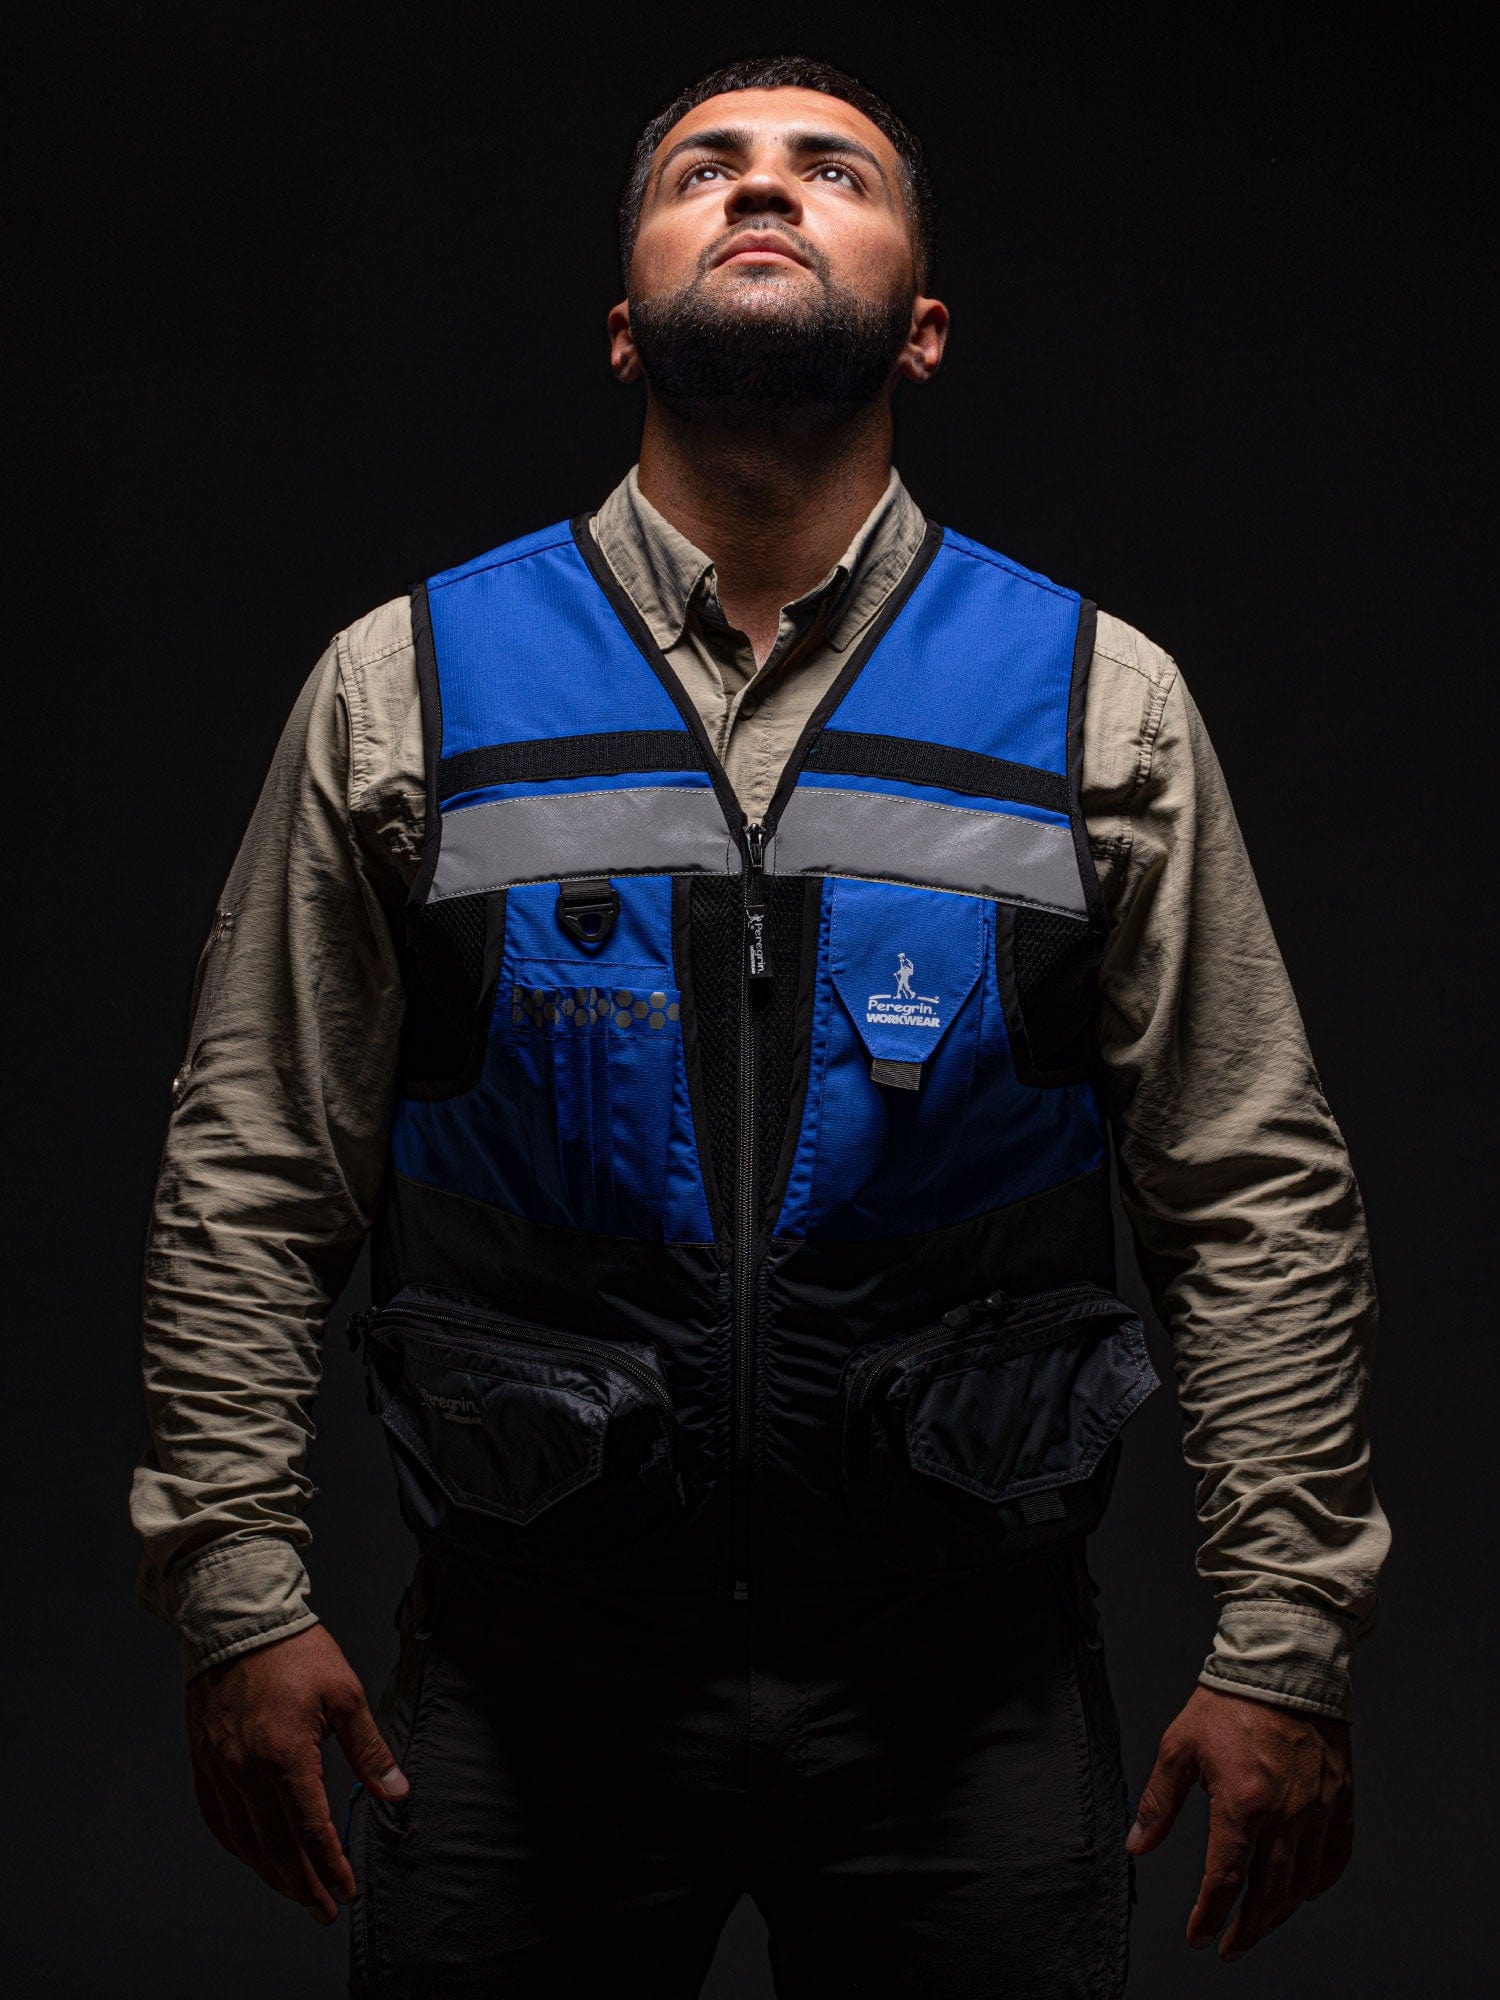 Peregrin Reflective Safety Vest Avg3 Blue